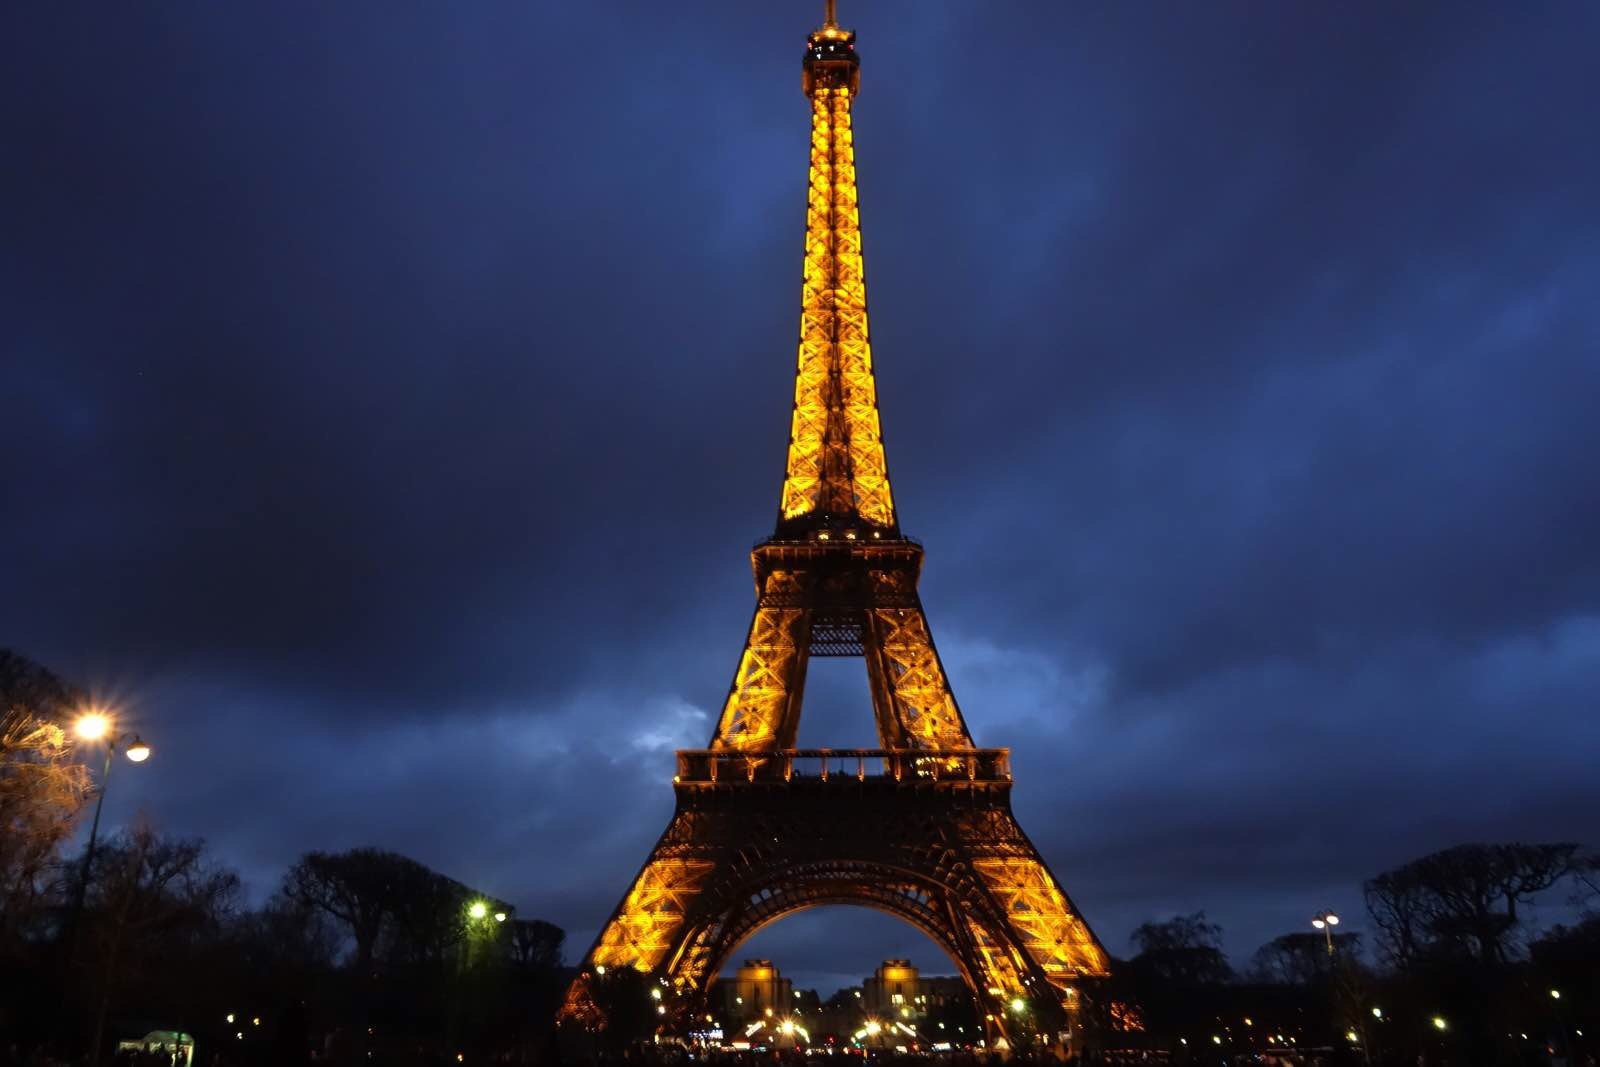 Tour d'Eiffel 4k Ultra HD 壁纸 and 背景 | 4000x2820 | ID:546391